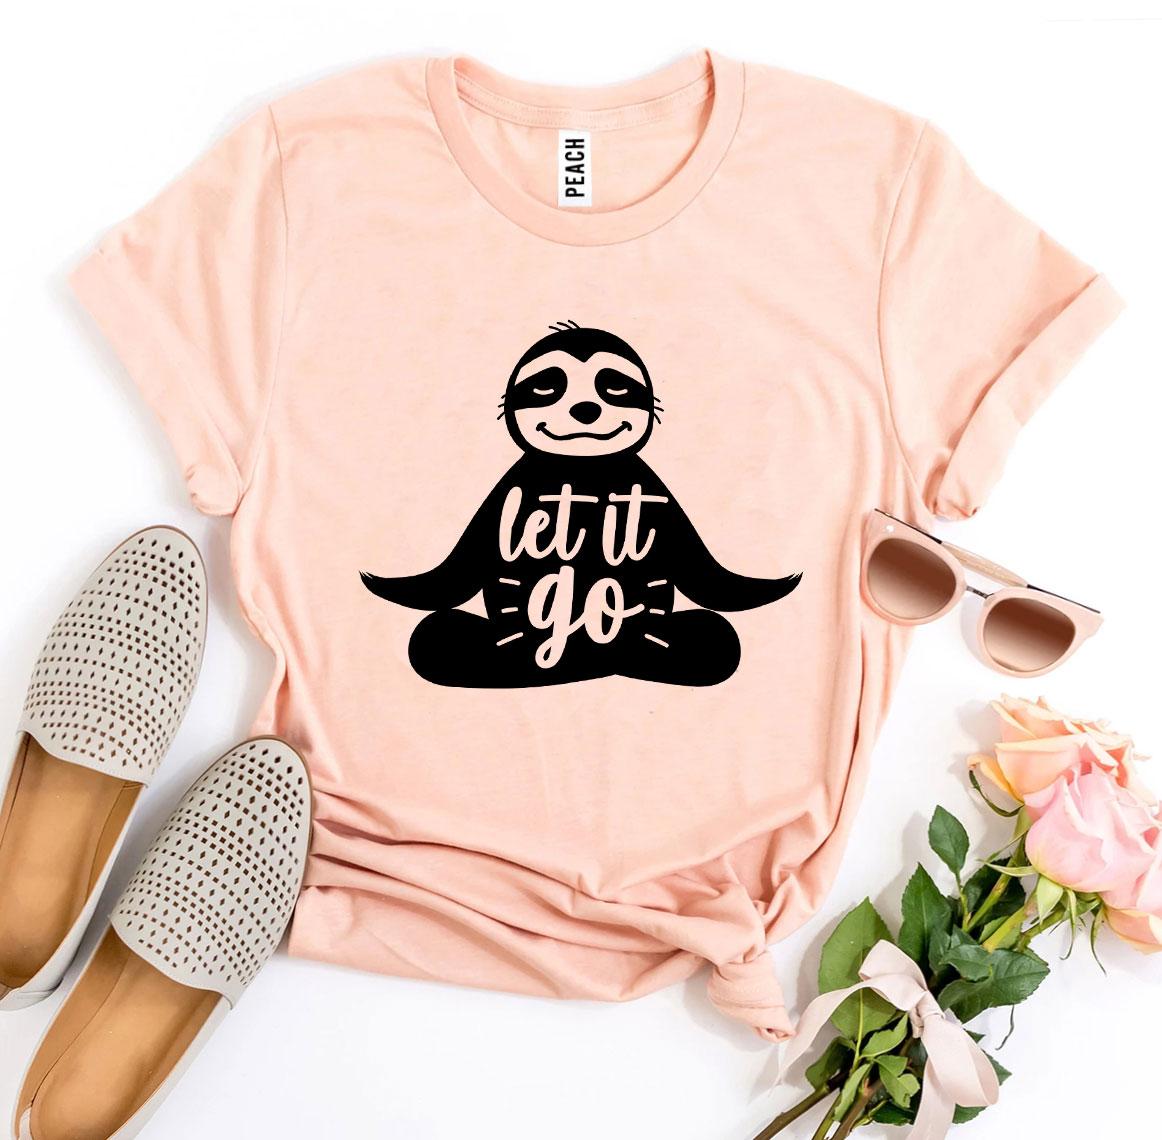 "Let It Go" T-Shirt